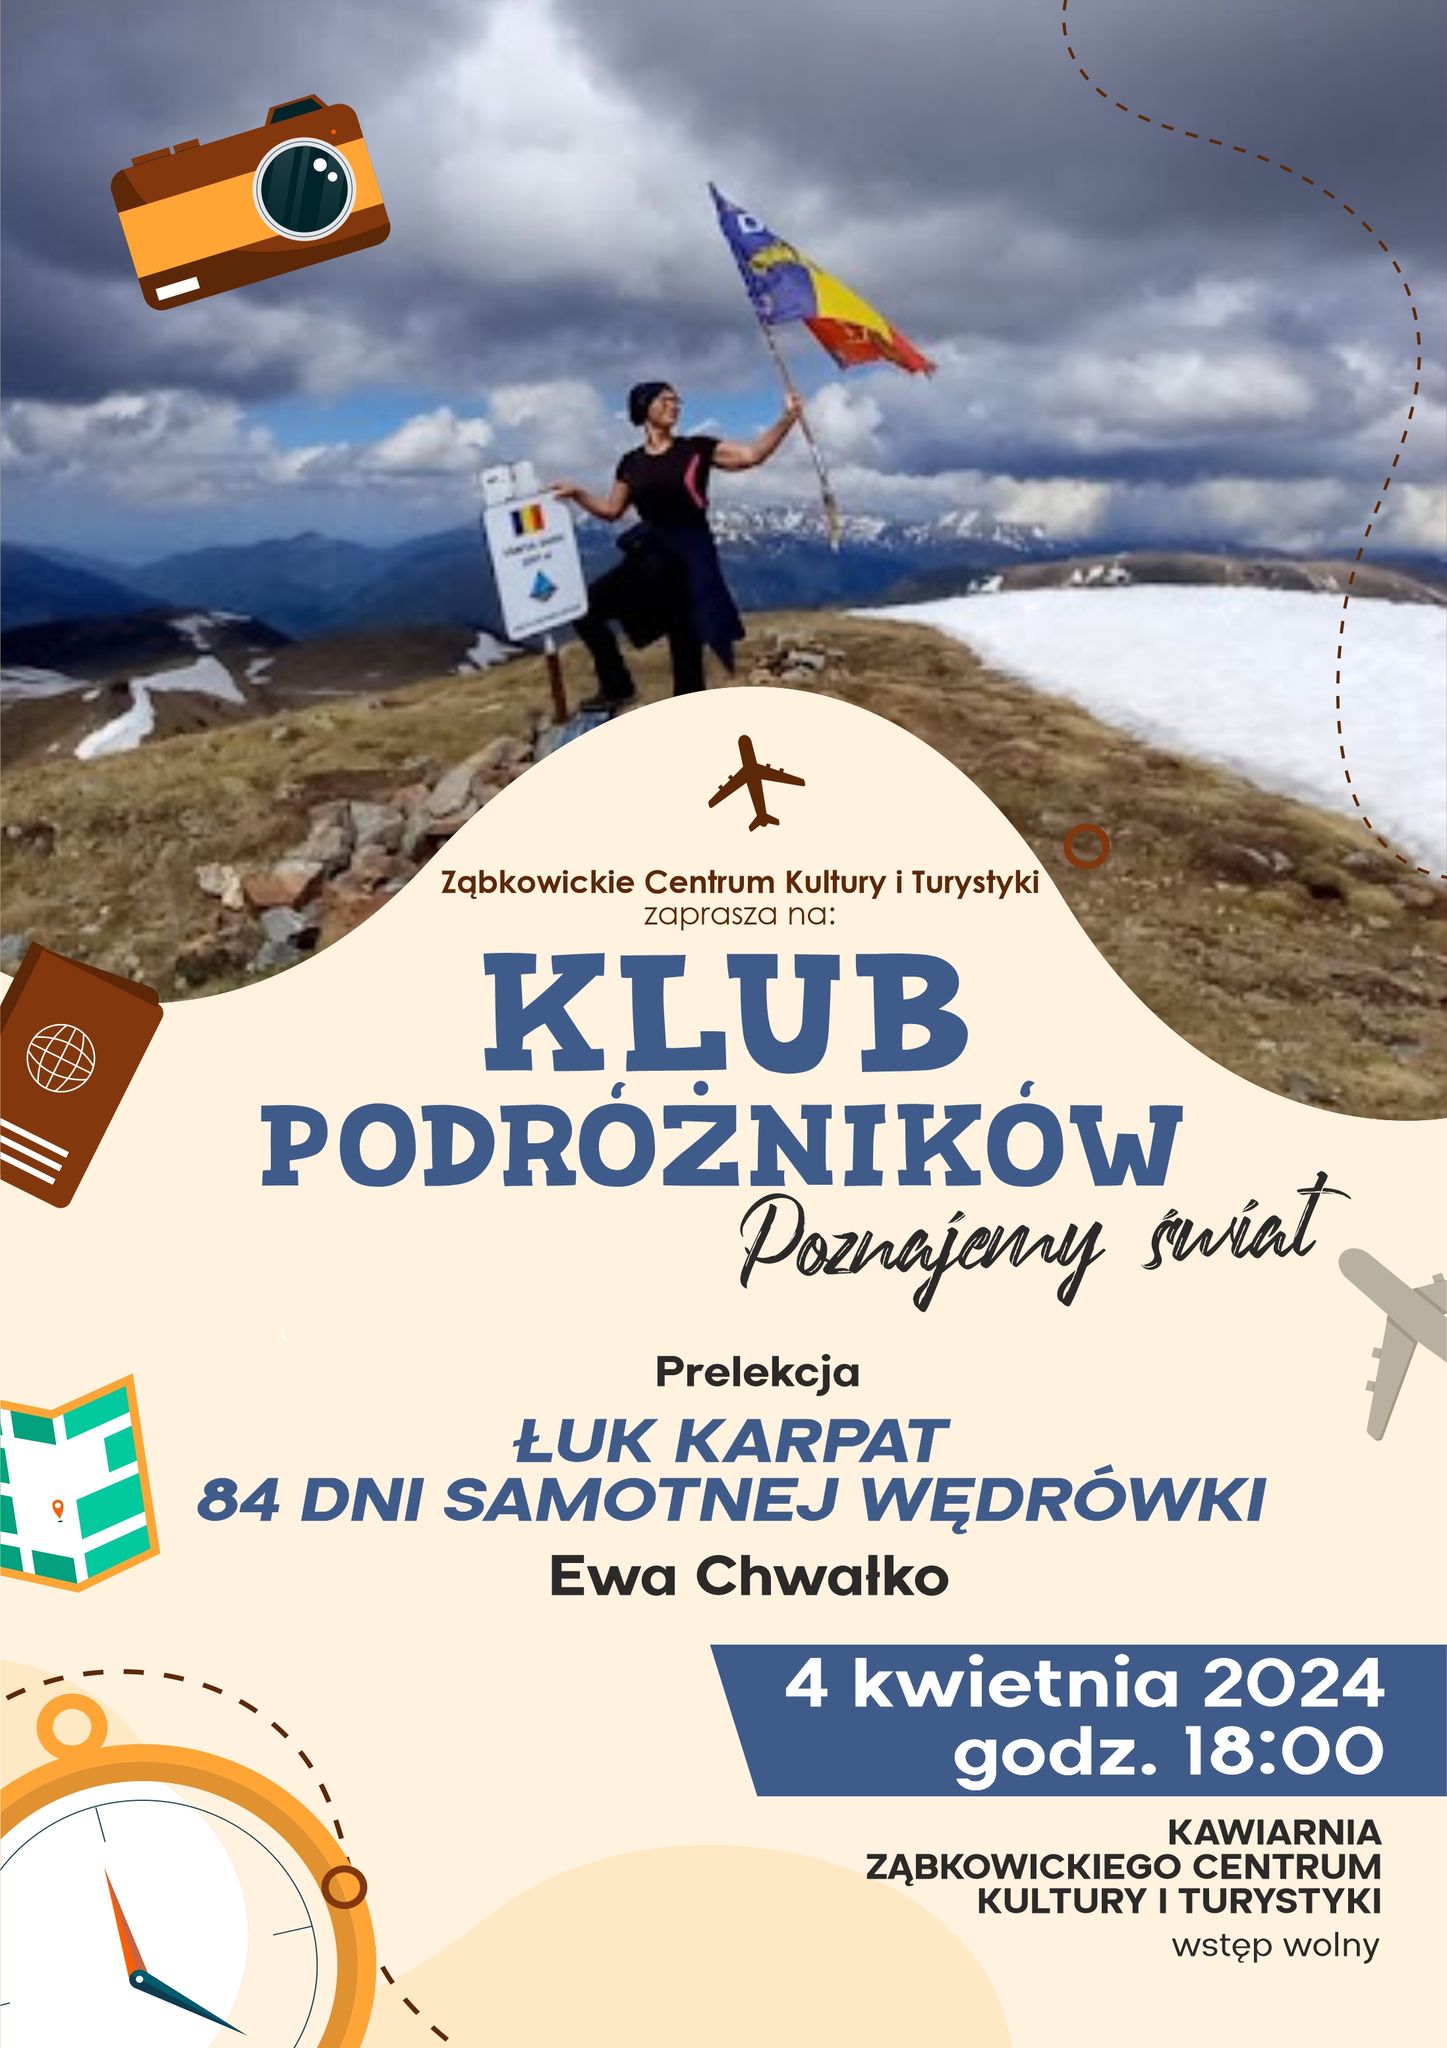 Plakat informujący o prelekcjach Ewy Chałko w Klubie Podróżników 4 kwietnia 2024 o godzinie 18:00 w kawiarni Ząbkowickiego Centrum Kultury i Turystyki.